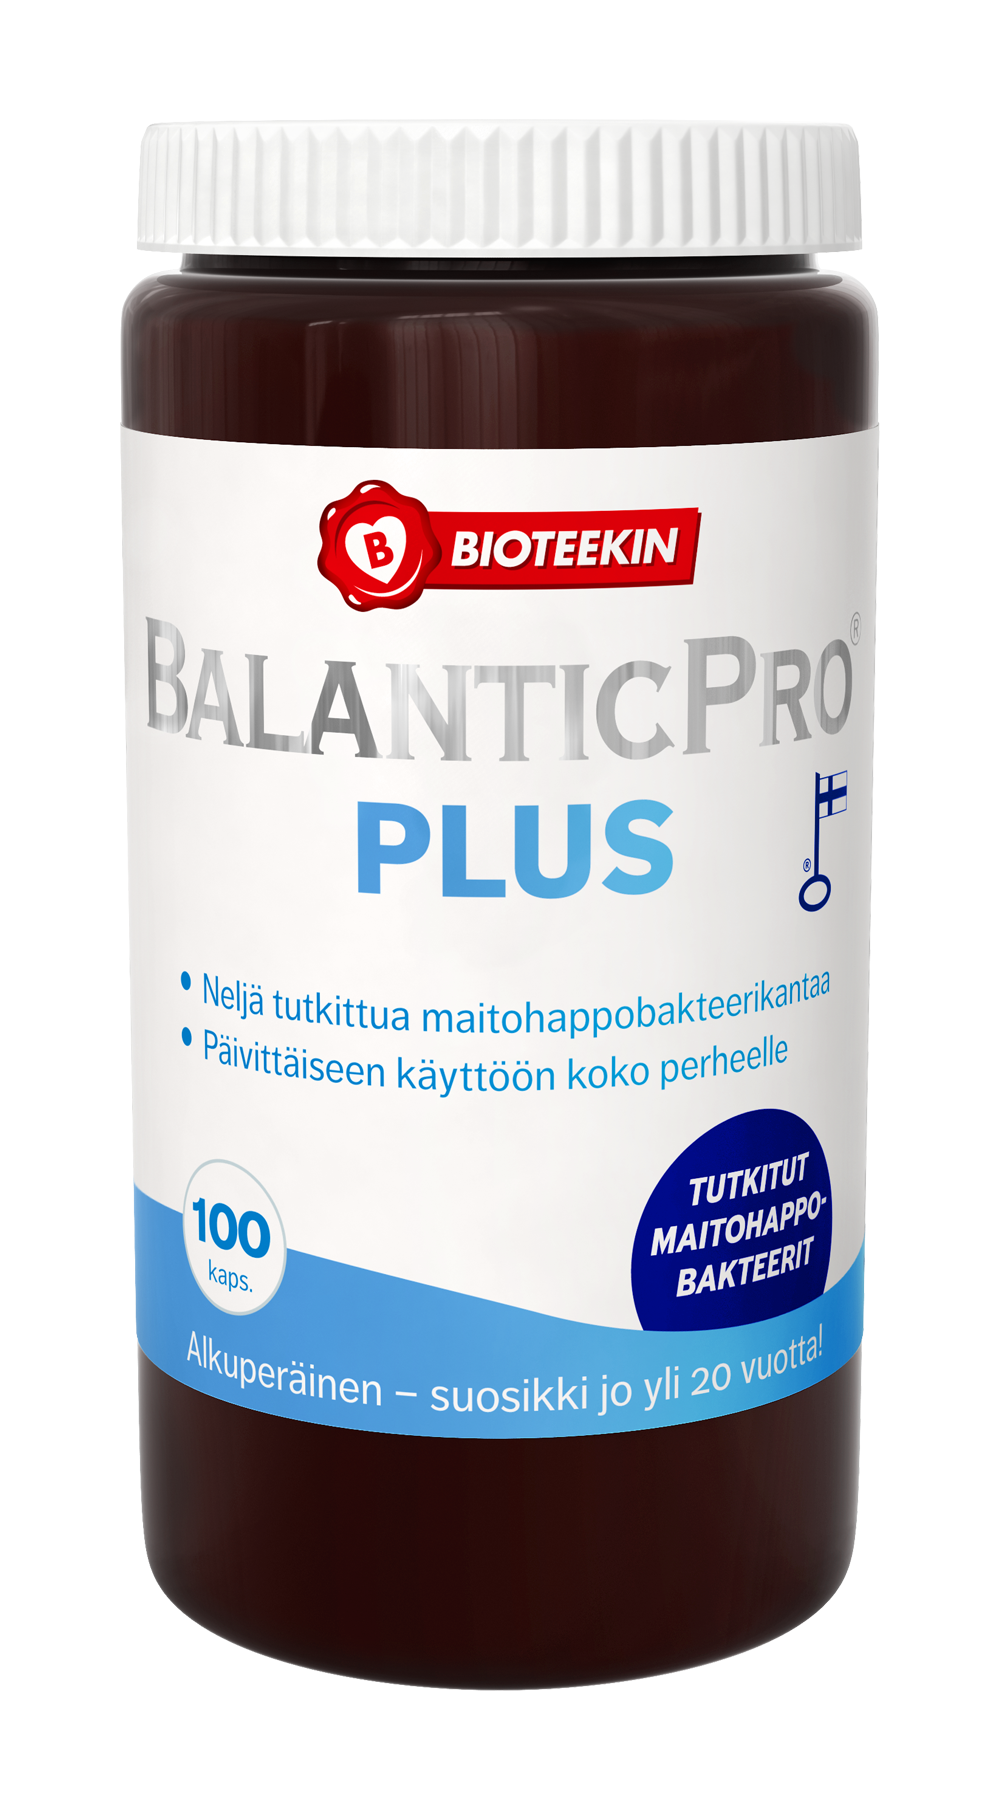 Bioteekin BalanticPro Plus - Maitohappobakteerivalmiste 100 kaps. - erä